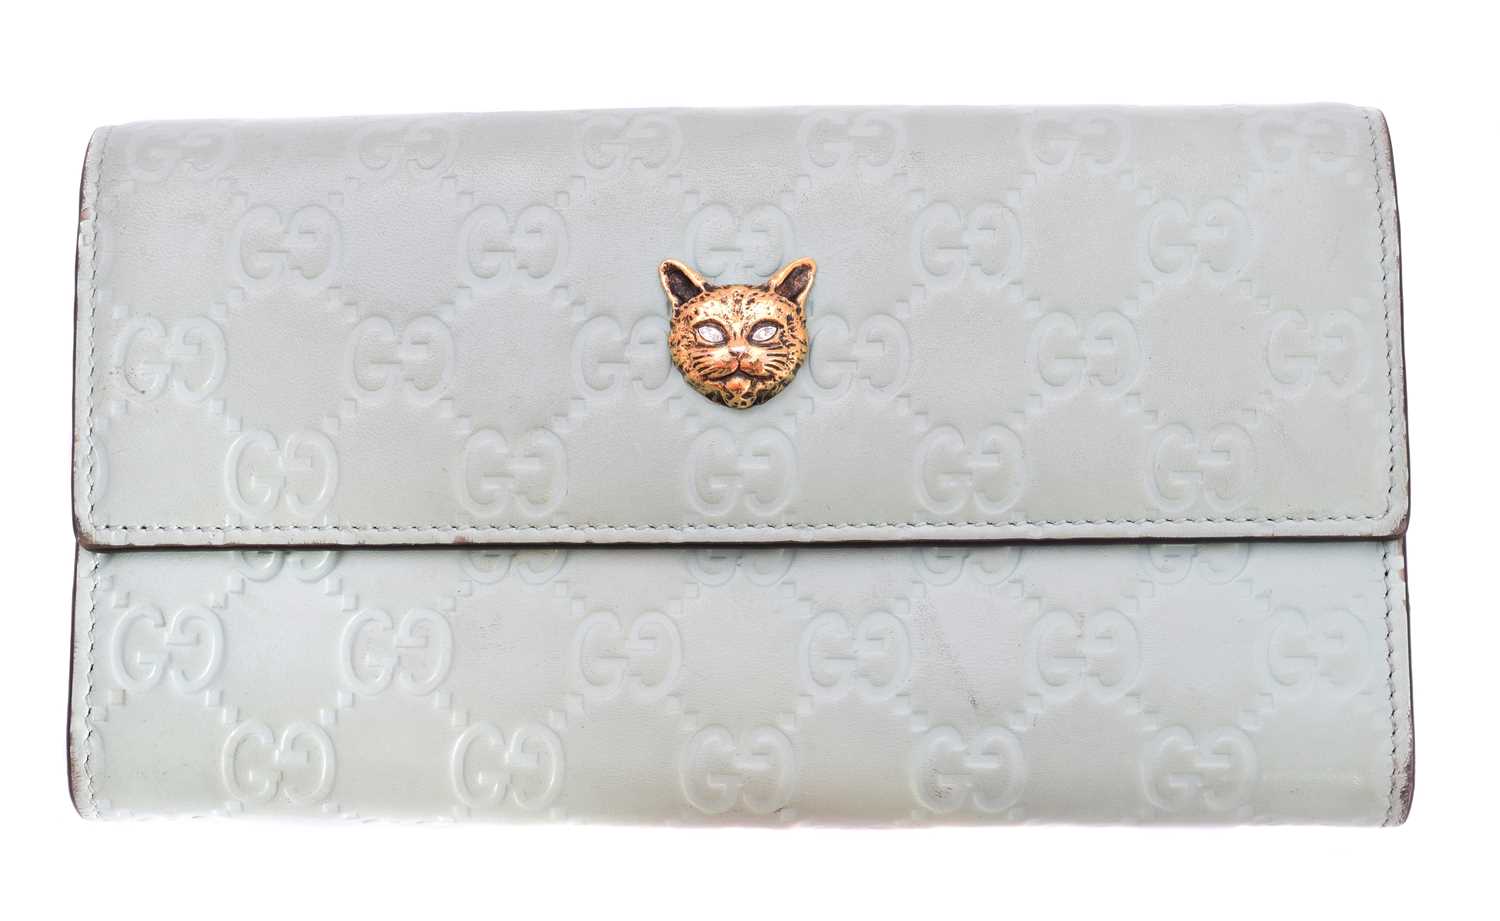 Lot 66 - A Gucci Cat Head Continental Wallet